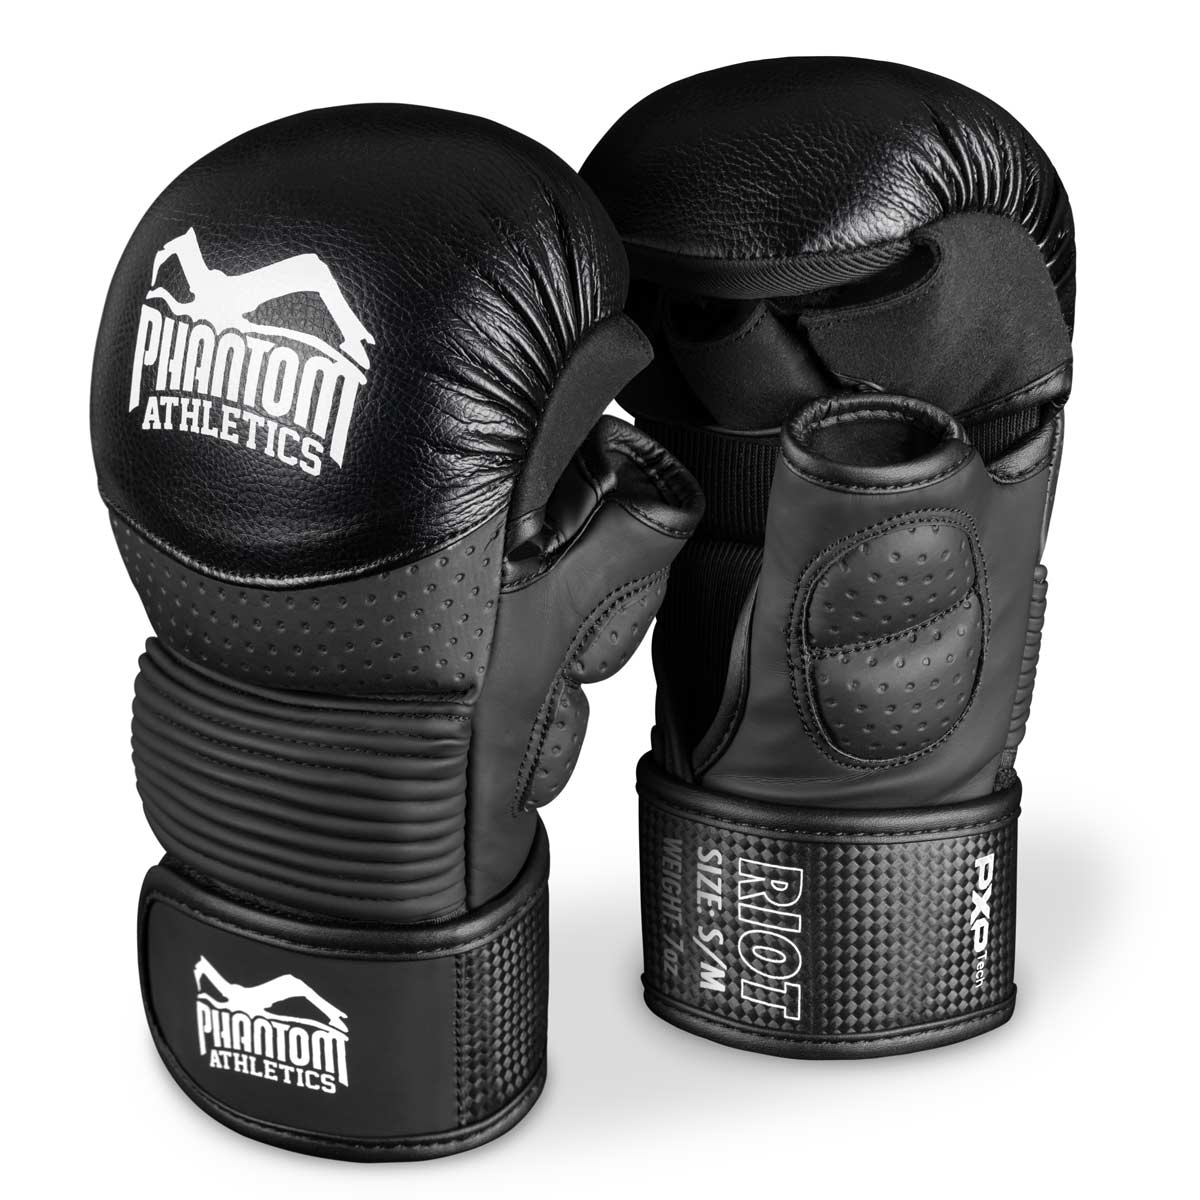 Sparingové rukavice Phantom RIOT PRO MMA. Ideálne pre váš tréning bojových umení a amatérske súťaže. Najkvalitnejšie a najbezpečnejšie MMA rukavice na trhu. Perfektný strih a špičková kvalita pre tréning a sparing.